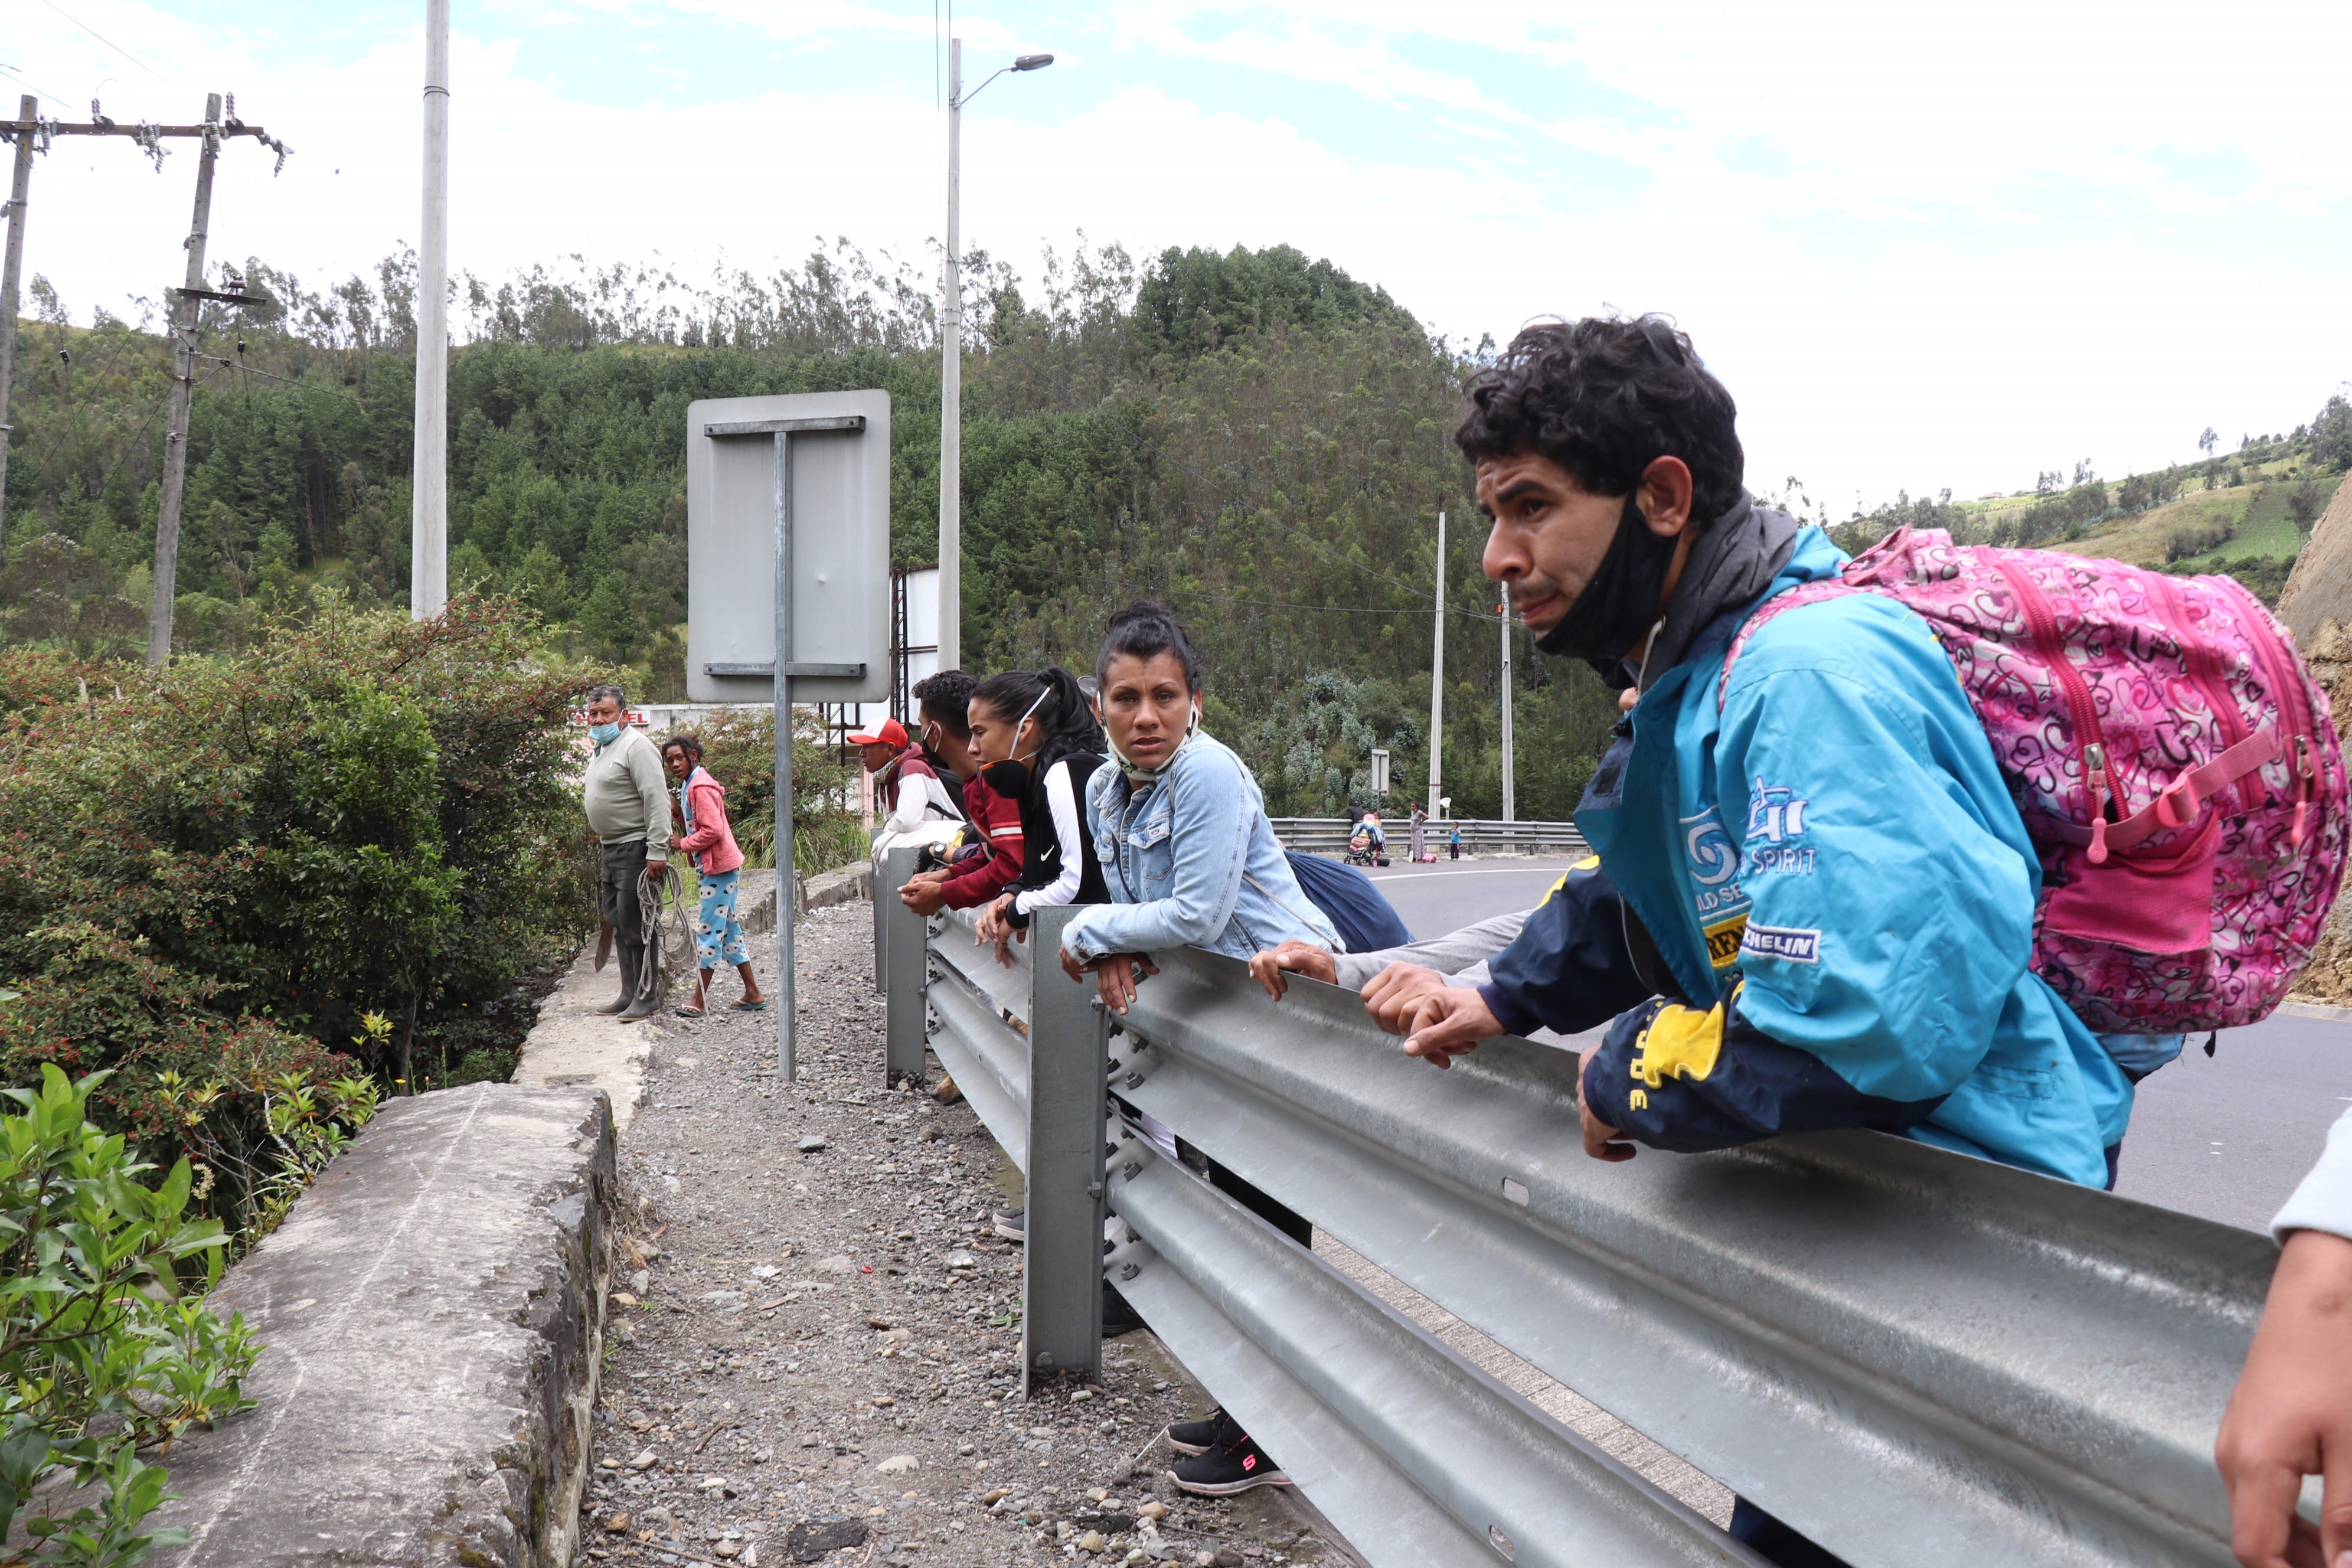 El régimen de Maduro “evalúa y estudia” propuestas para reabrir la frontera con Colombia